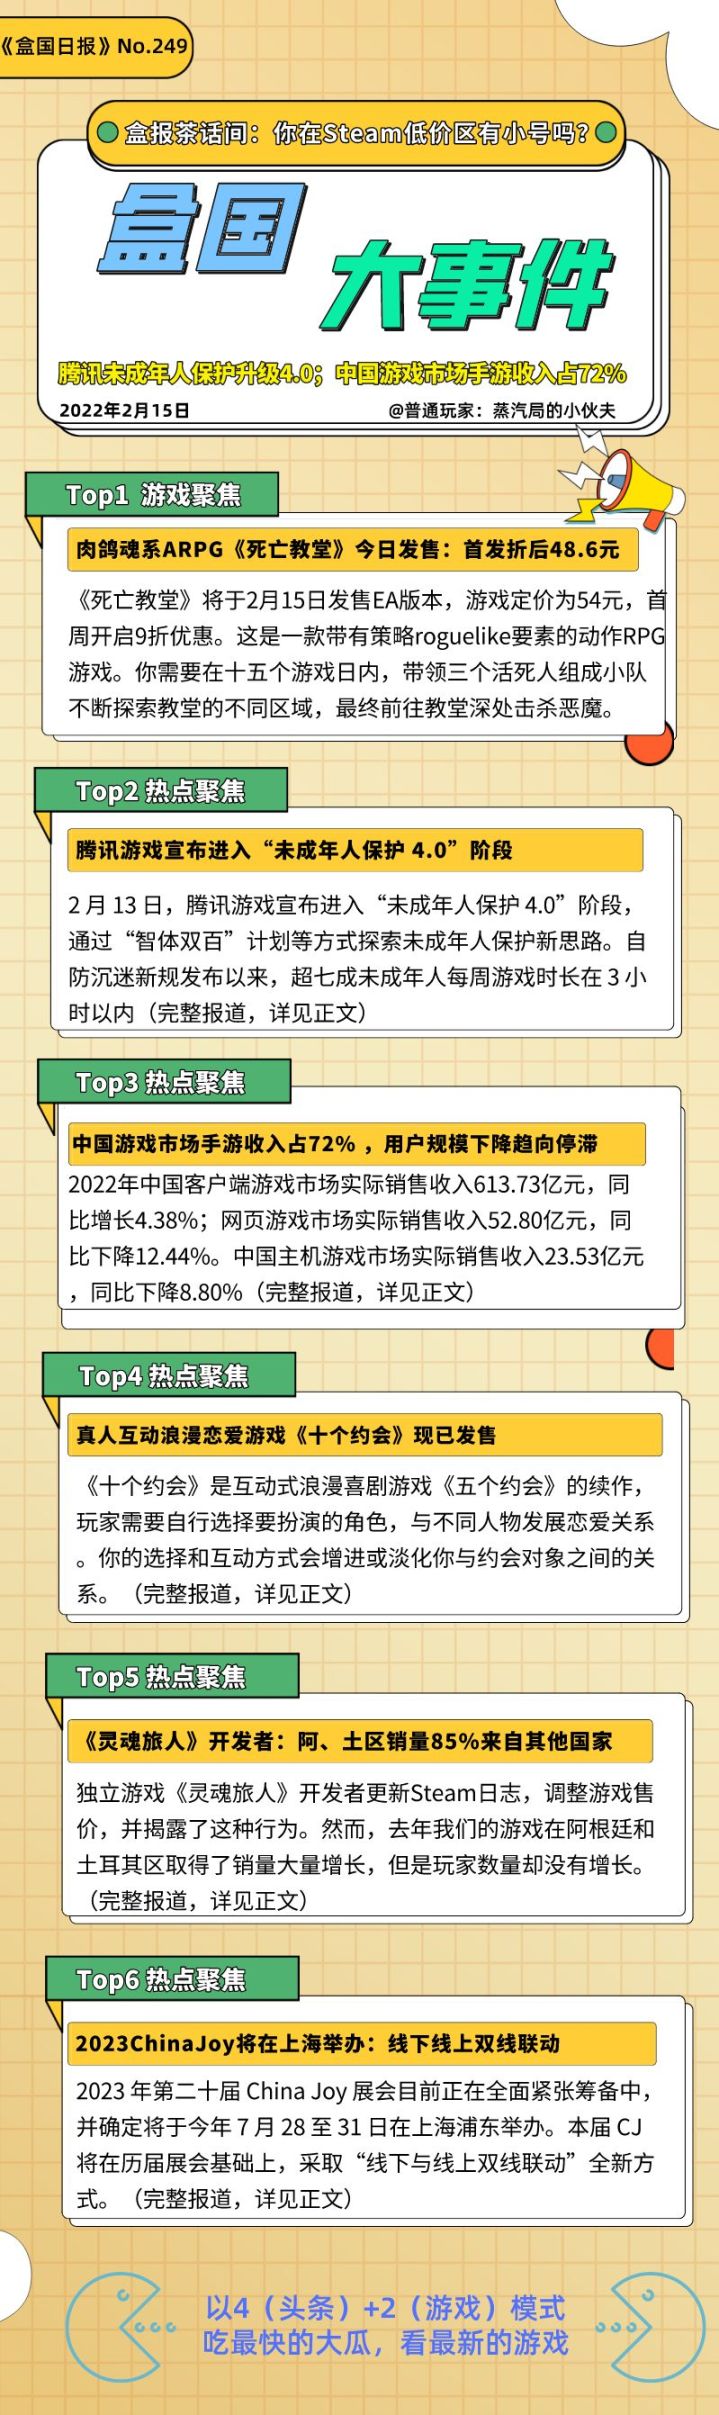 盒国日报|腾讯未成年人保护升级4.0；中国游戏市场手游收入占72%